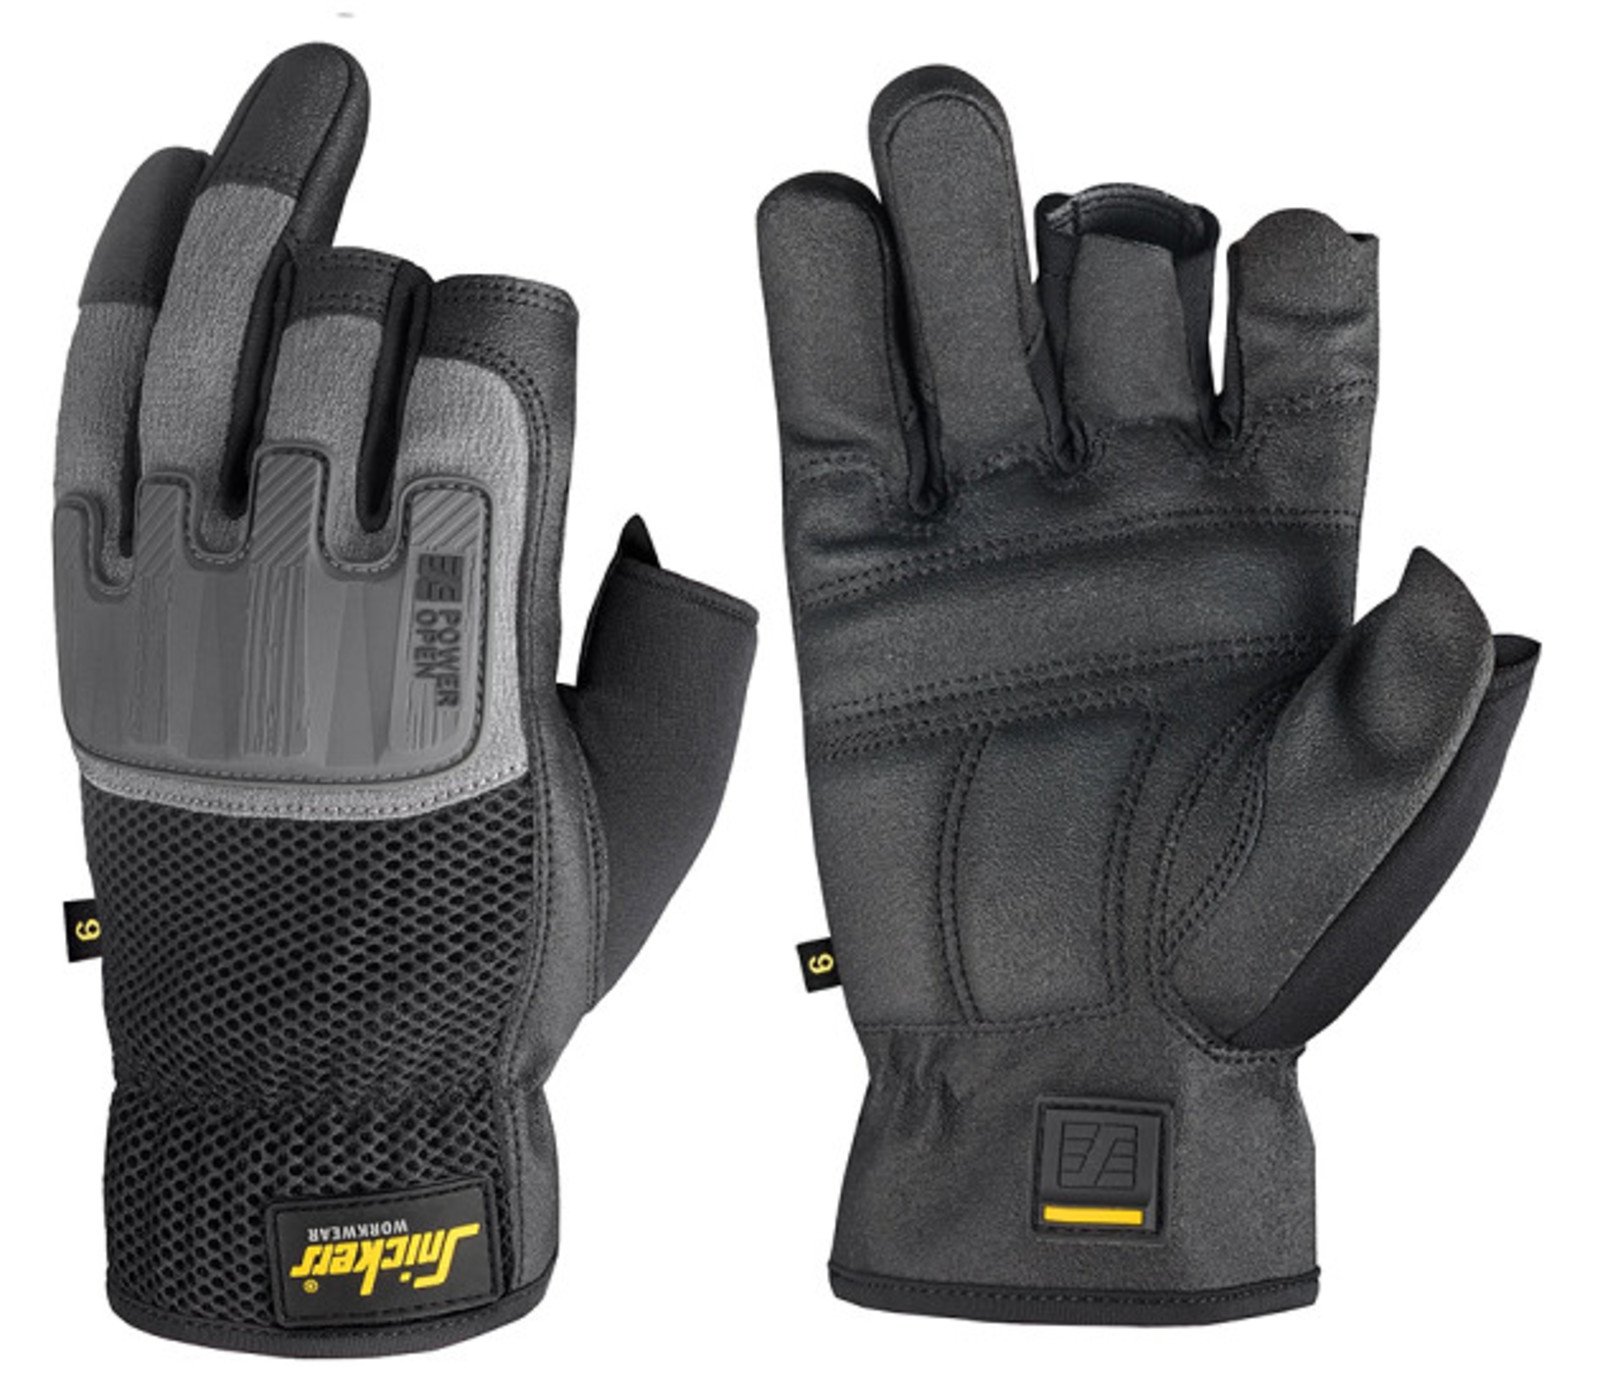 Ochranné rukavice Snickers® Power Open bez prstov - veľkosť: 12/XXXL, farba: sivá/čierna